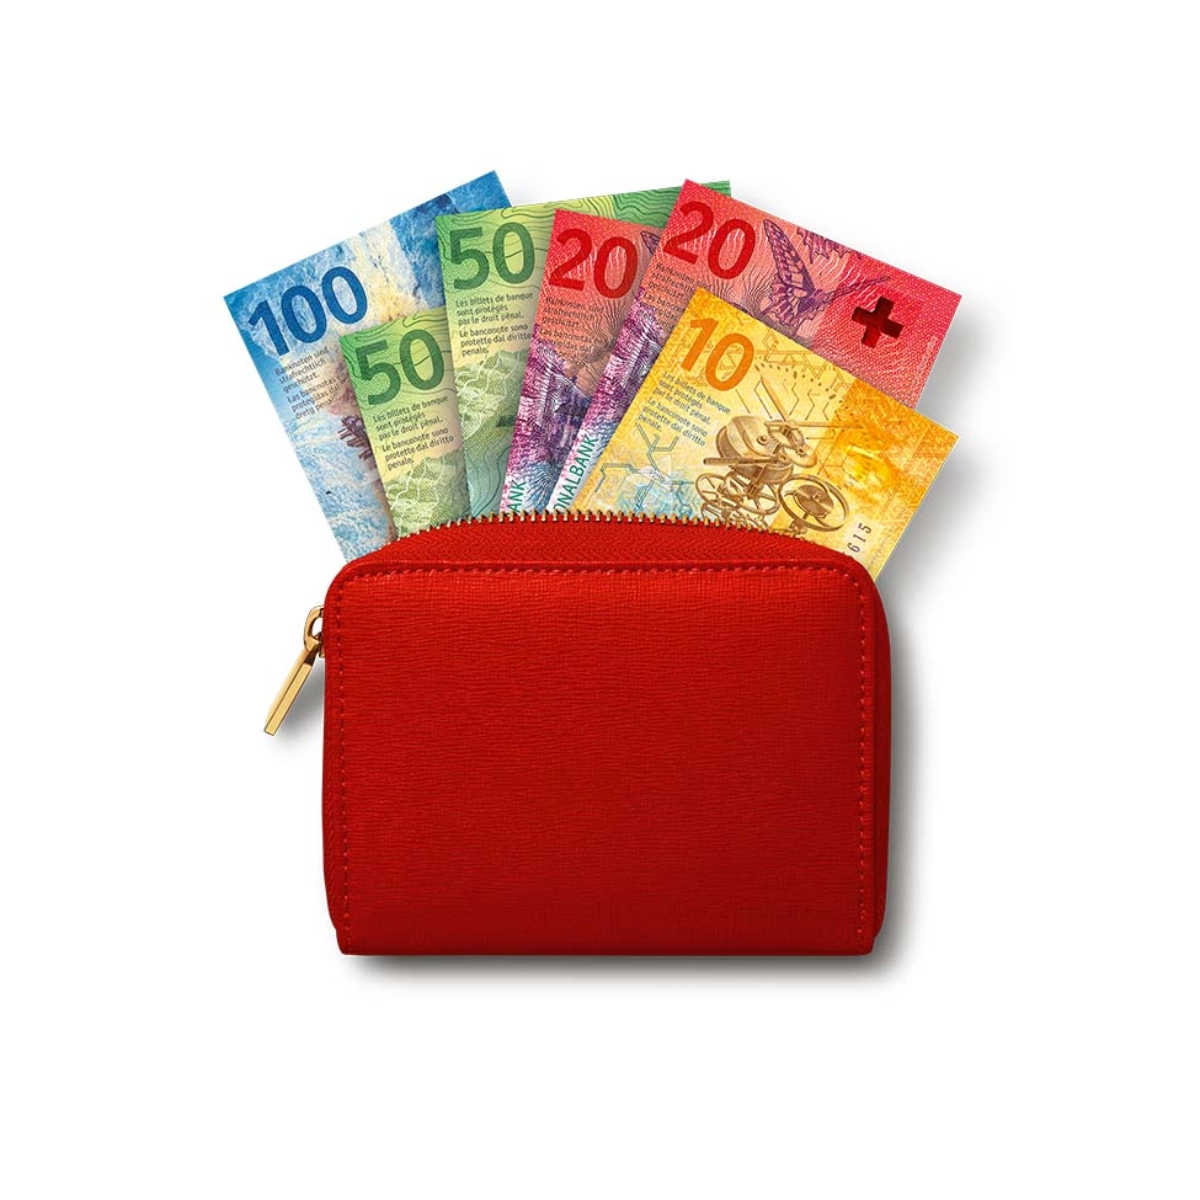 Aus einem roten Portemonnaie schauen Geldscheine im Wert von 250 Franken raus